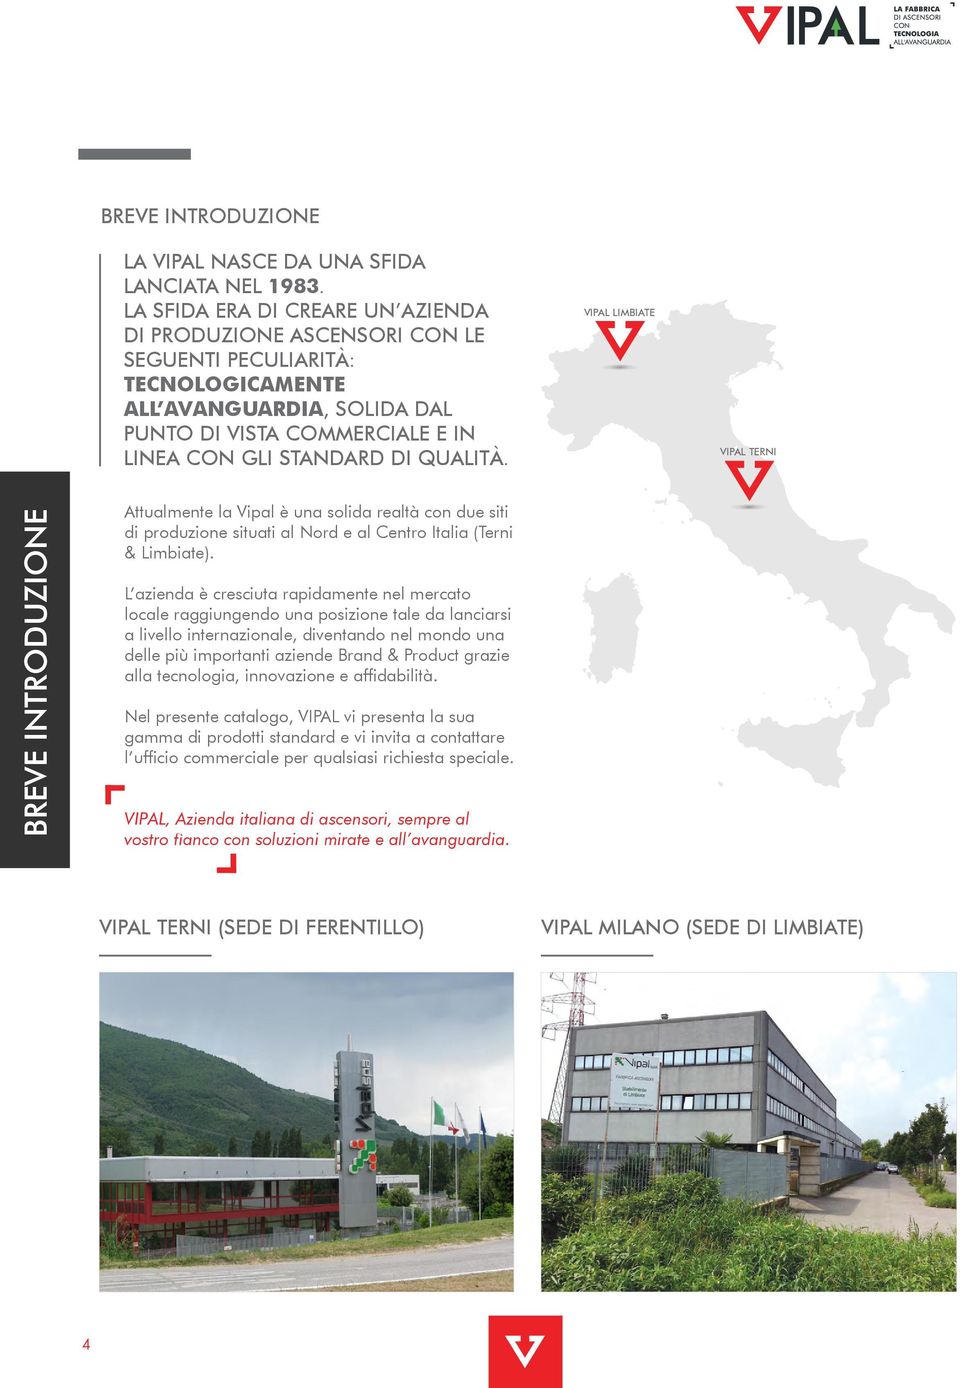 VIPAL LIMBIATE VIPAL TERNI BrEVE INTRODUZIONE Attualmente la Vipal è una solida realtà con due siti di produzione situati al Nord e al Centro Italia (Terni & Limbiate).